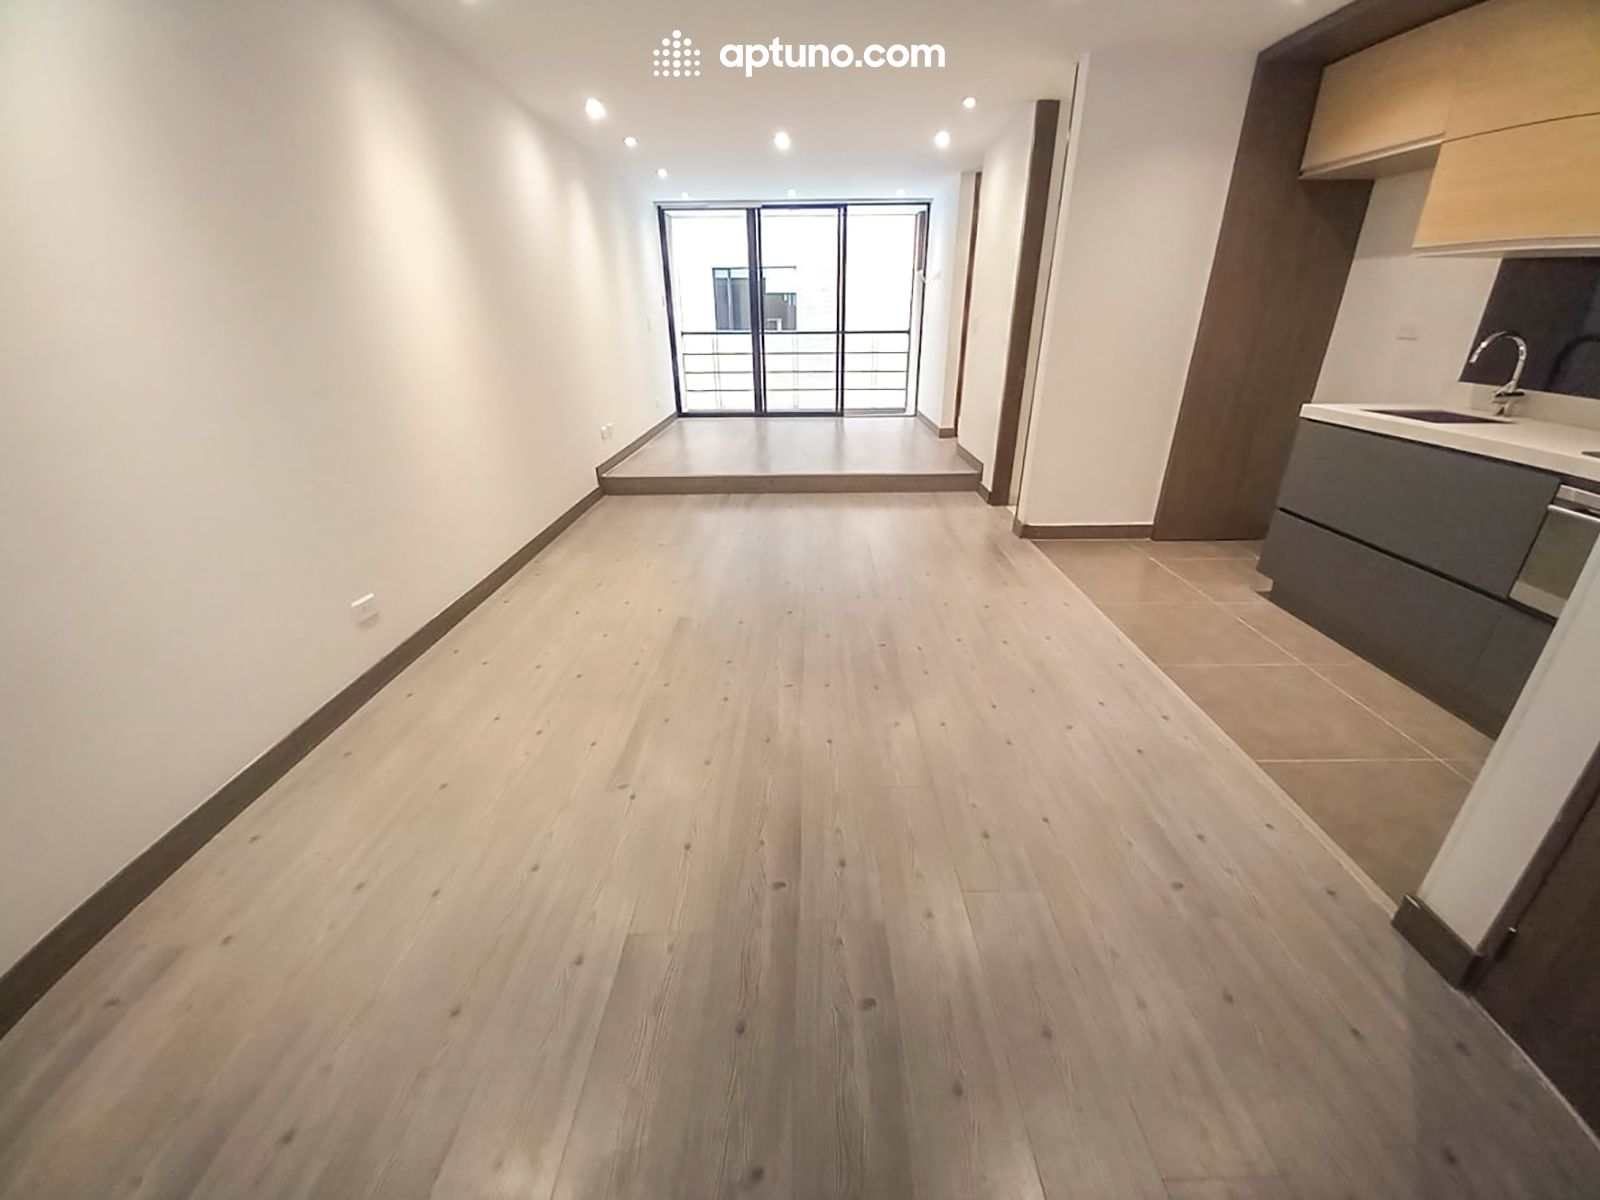 Apartamento en arriendo Chapinero Central 44 m² - $ 2.000.000,00